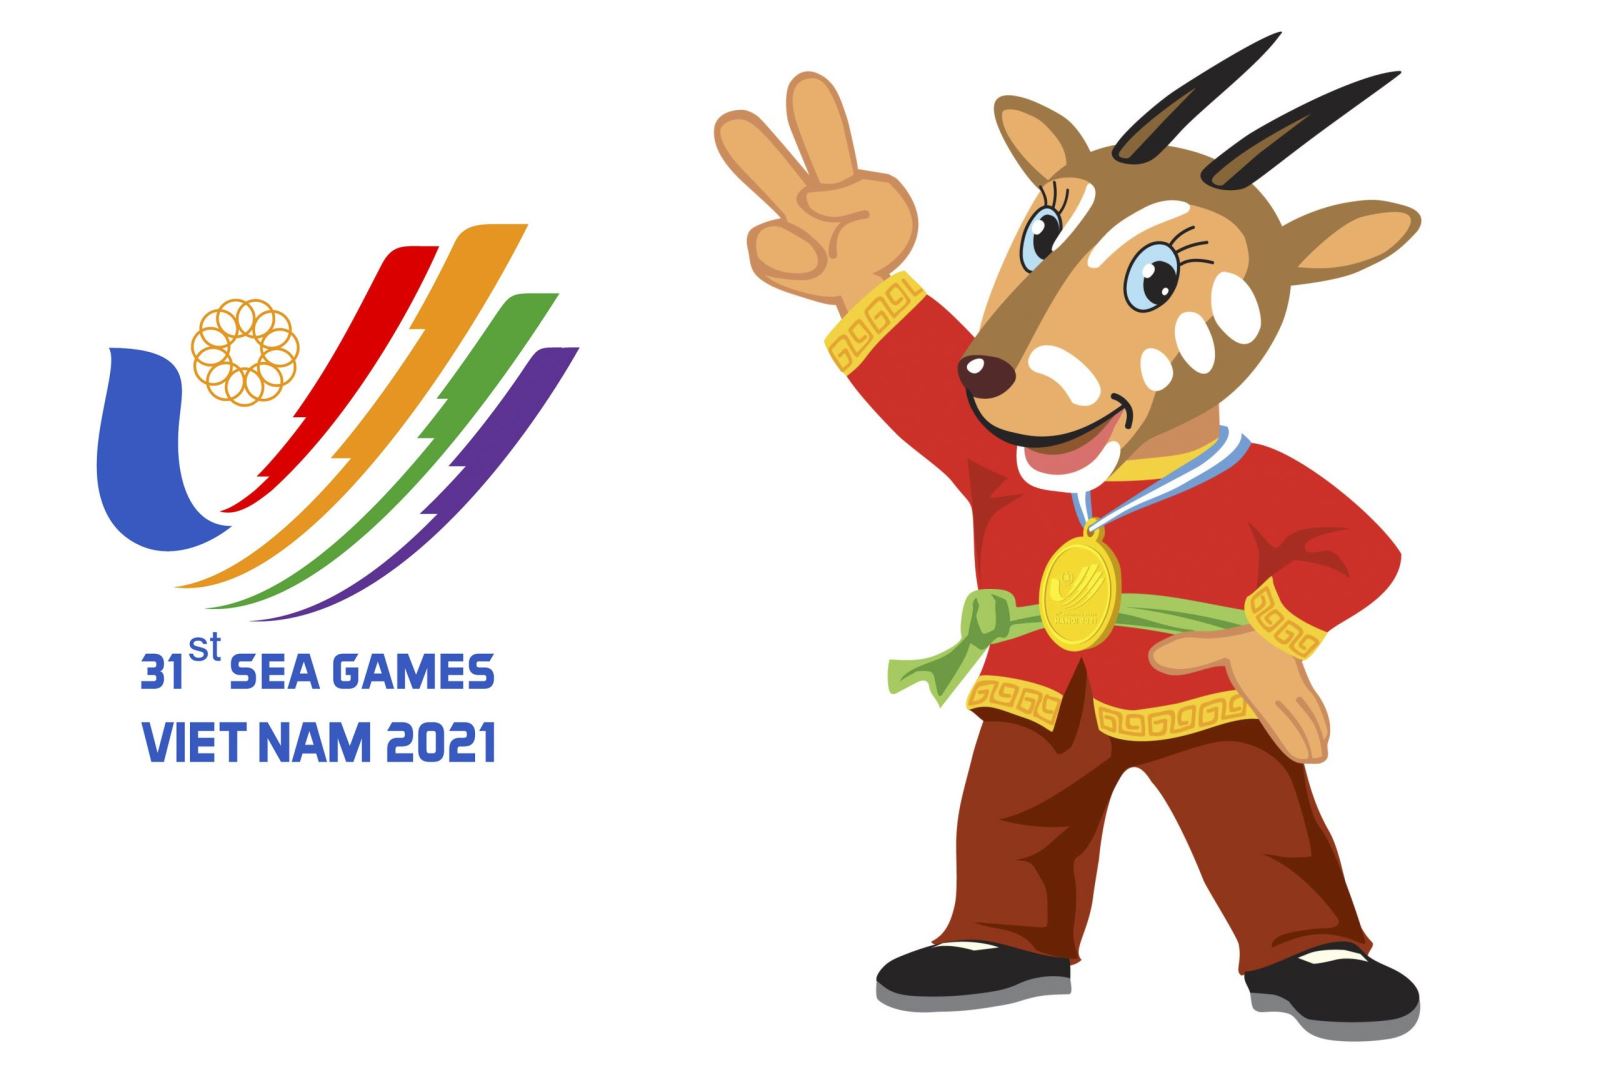 SEA Games 31 và Para Games 11: Các trận đấu sôi động của SEA Games 31 và Para Games 11 năm nay sẽ mang lại nhiều cảm xúc và trải nghiệm tuyệt vời. Hãy cùng chúng tôi xem những hình ảnh về các niềm vui, niềm đam mê và cả sự cạnh tranh khốc liệt tại đại hội thể thao lớn nhất Đông Nam Á này. Bạn sẽ không muốn bỏ lỡ bất kì một trận đấu nào!